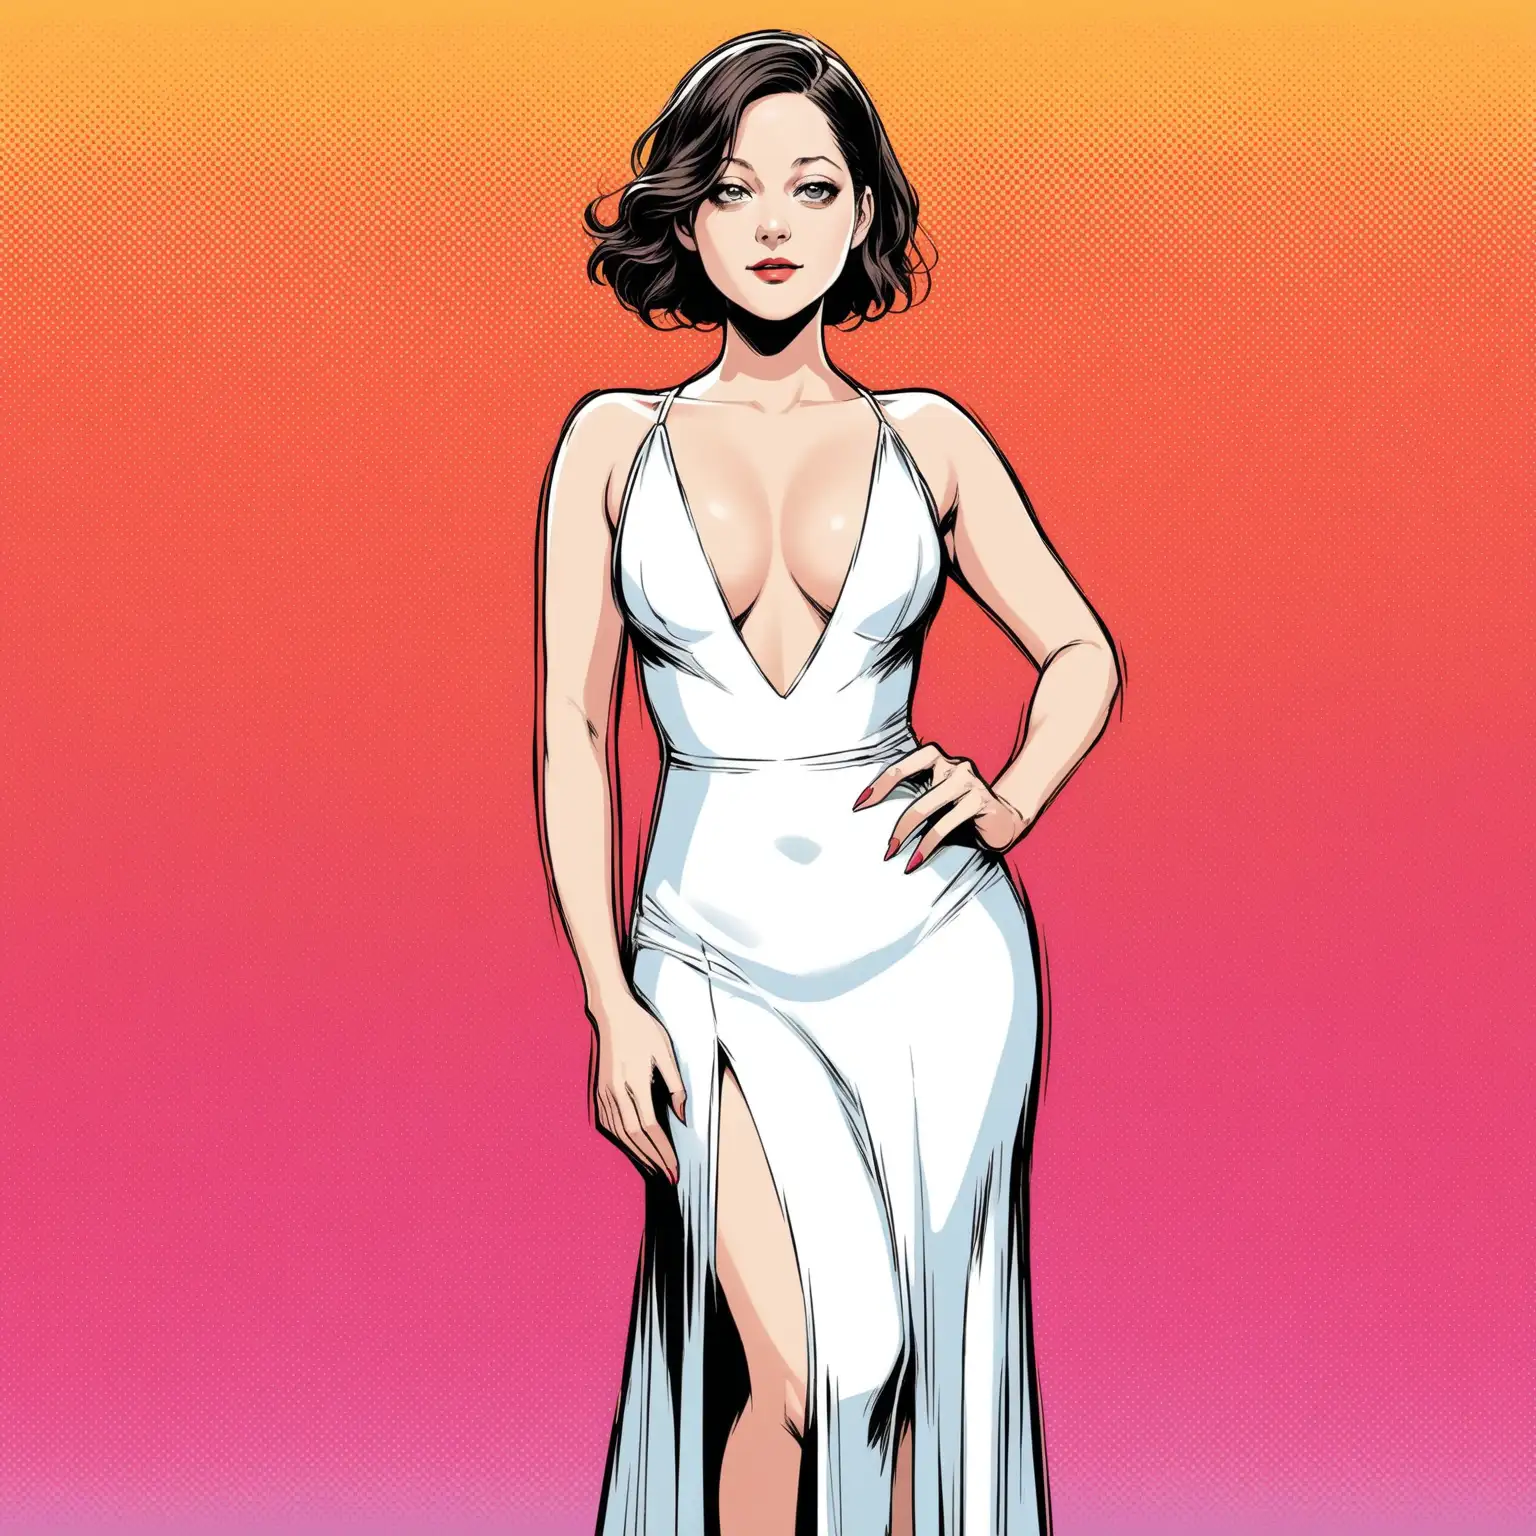 dans un style bande dessinée :
une femme elegante au trait de marion cautillard qui porte un robe courte blanche avec un decolté en v qui montre ses formes